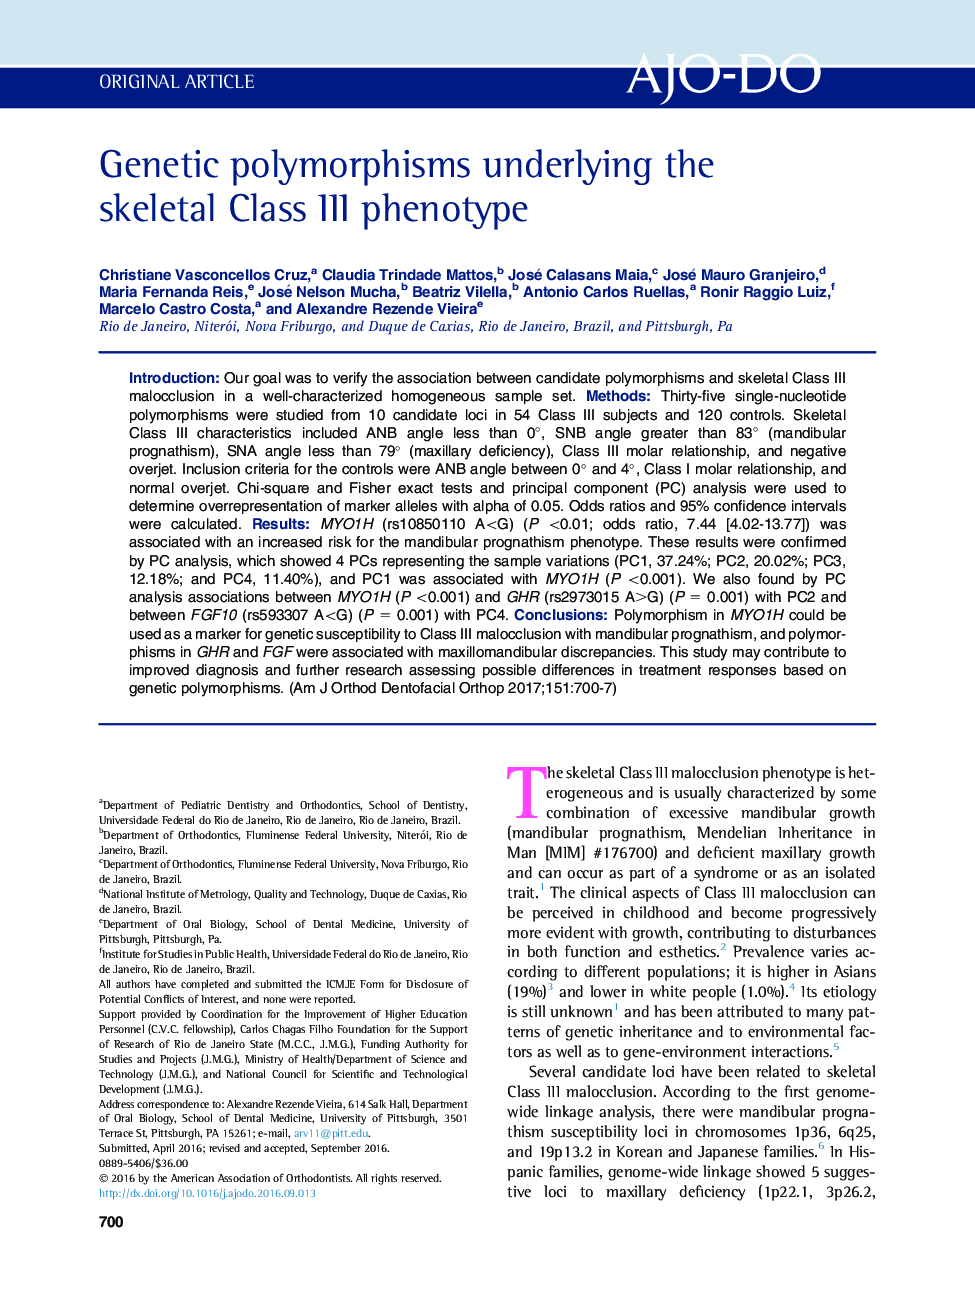 Genetic polymorphisms underlying the skeletal Class III phenotype